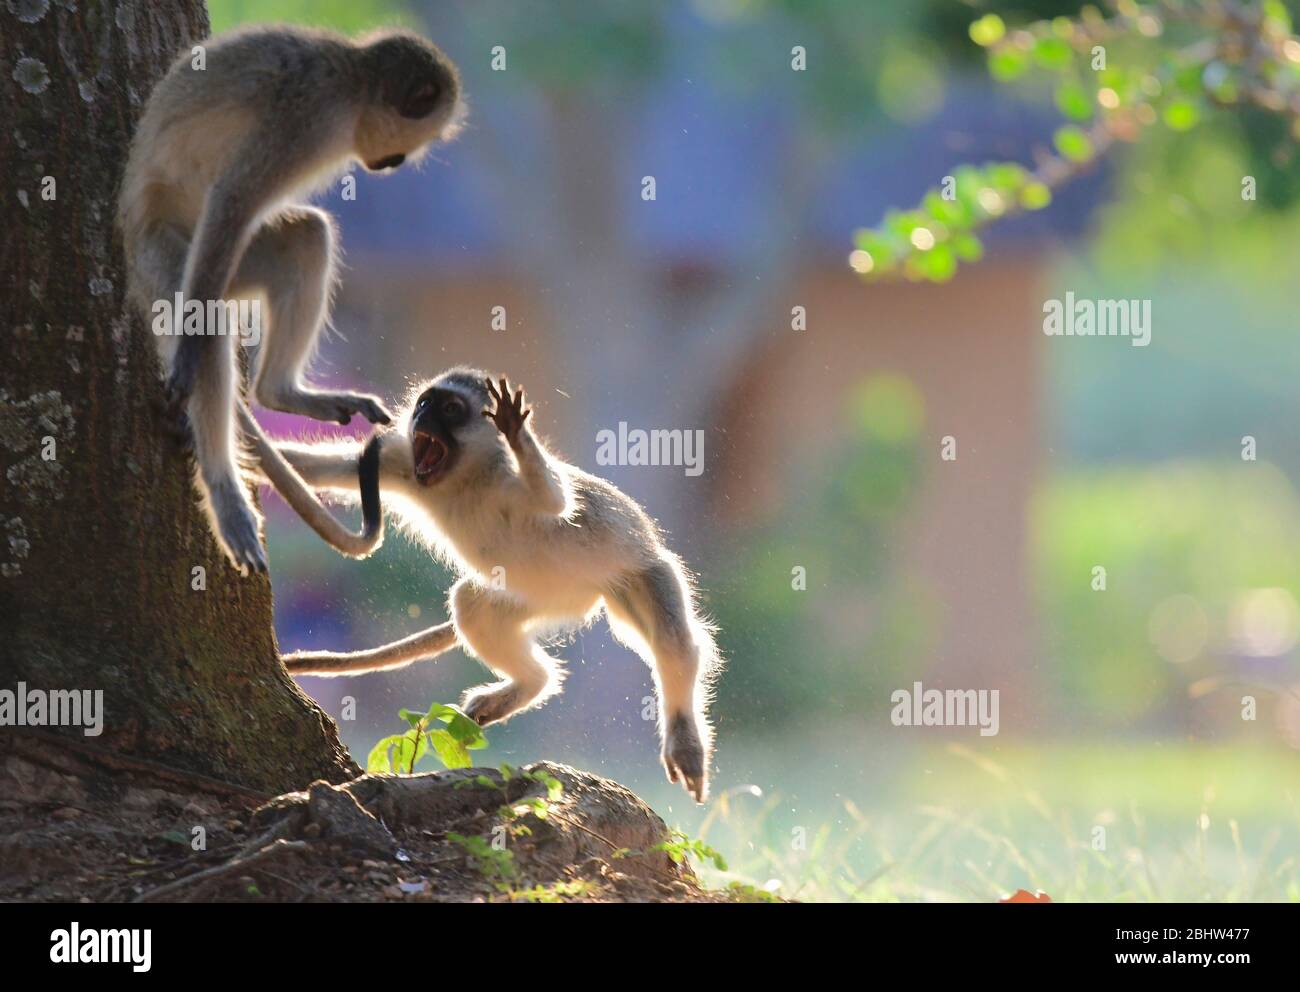 Playful vervet monkeys in Kruger National Park, South Africa Stock Photo